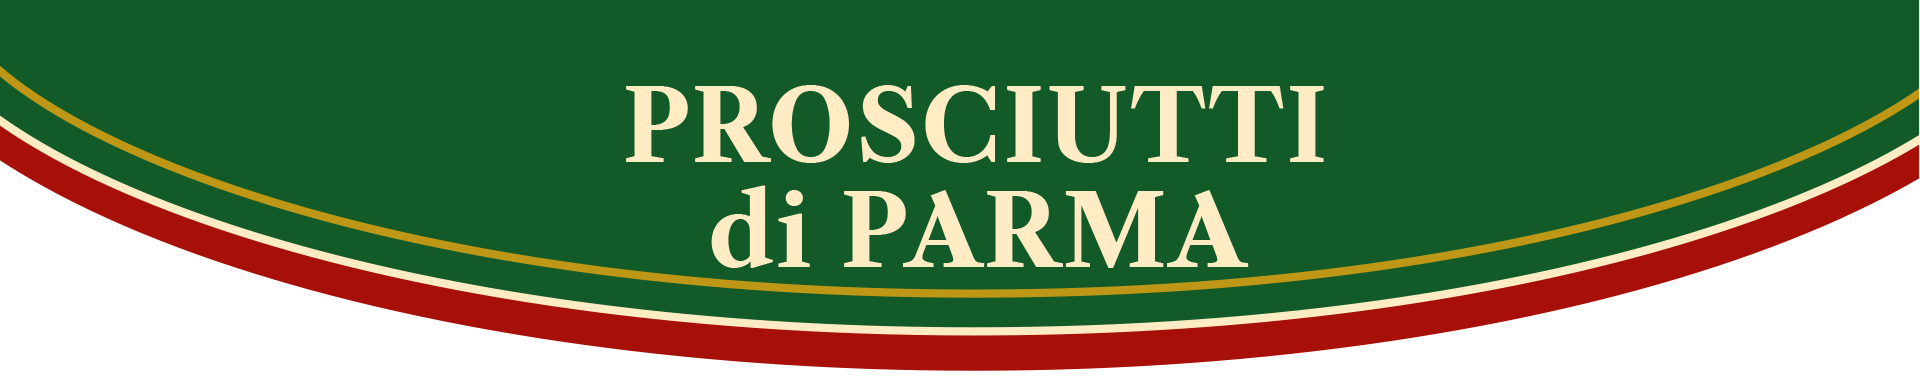 1 Salumeria Tradizionale - Prosciutti di Parma